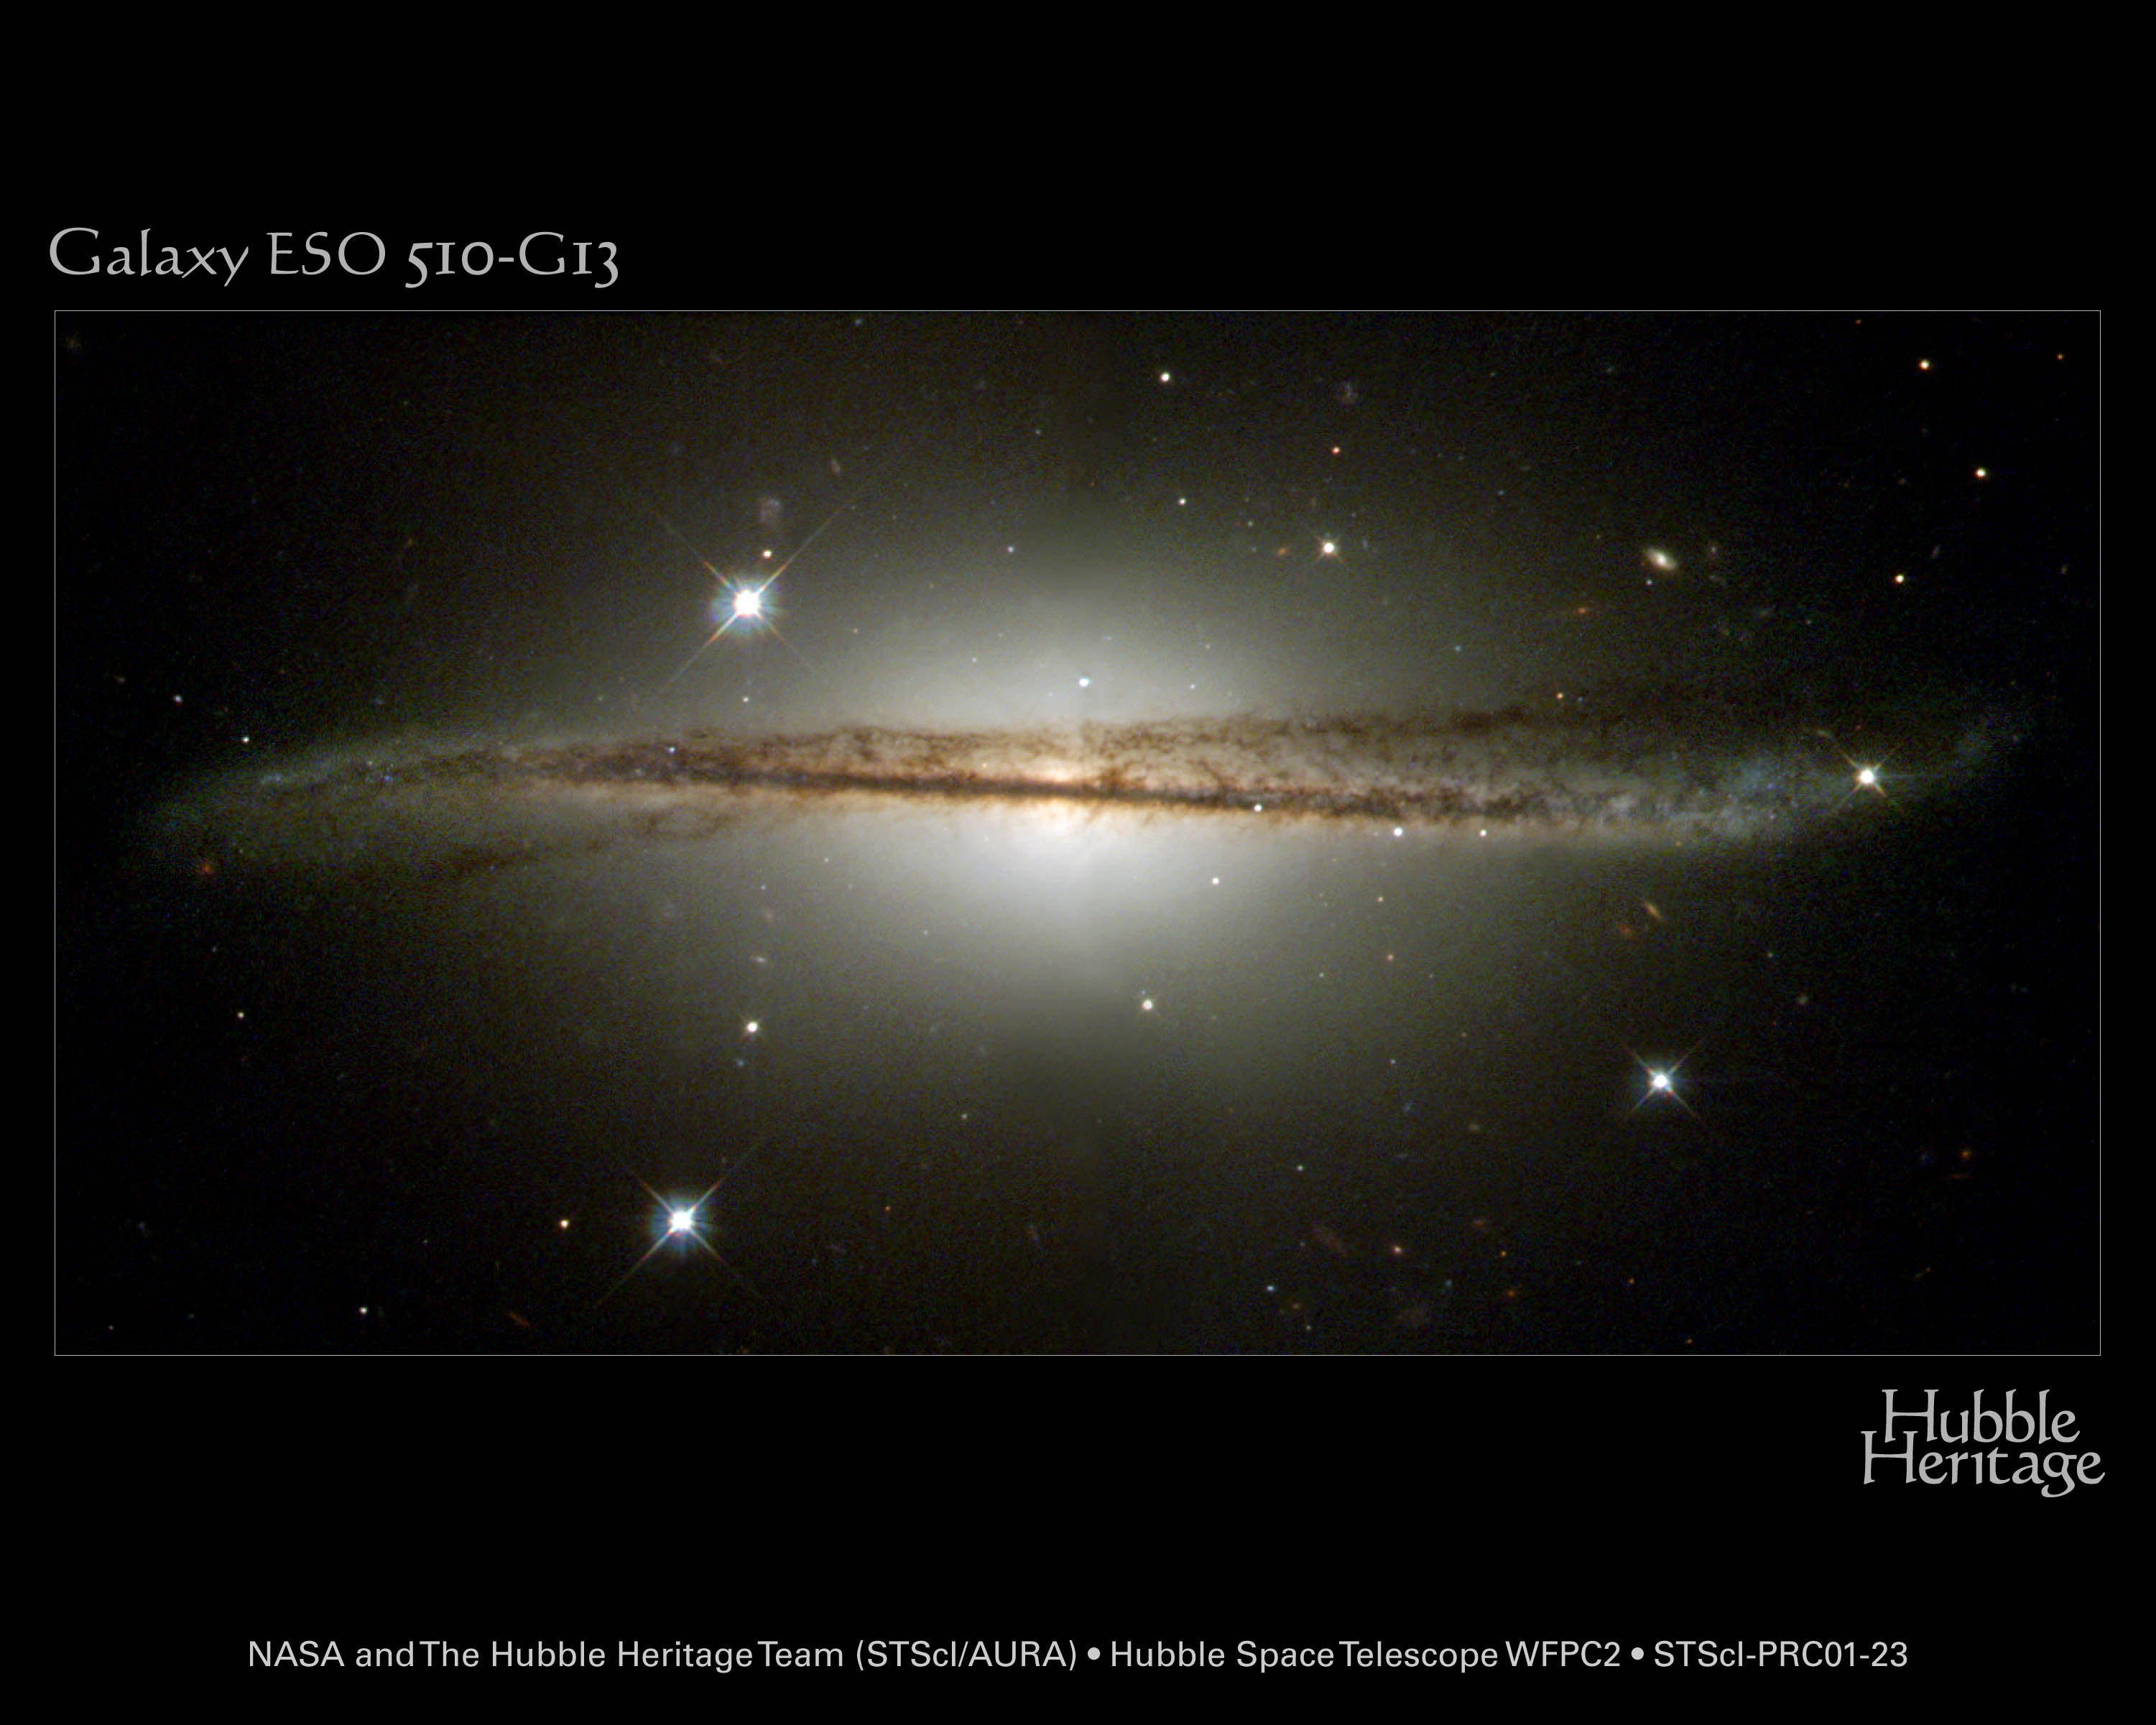    ESO 510-13